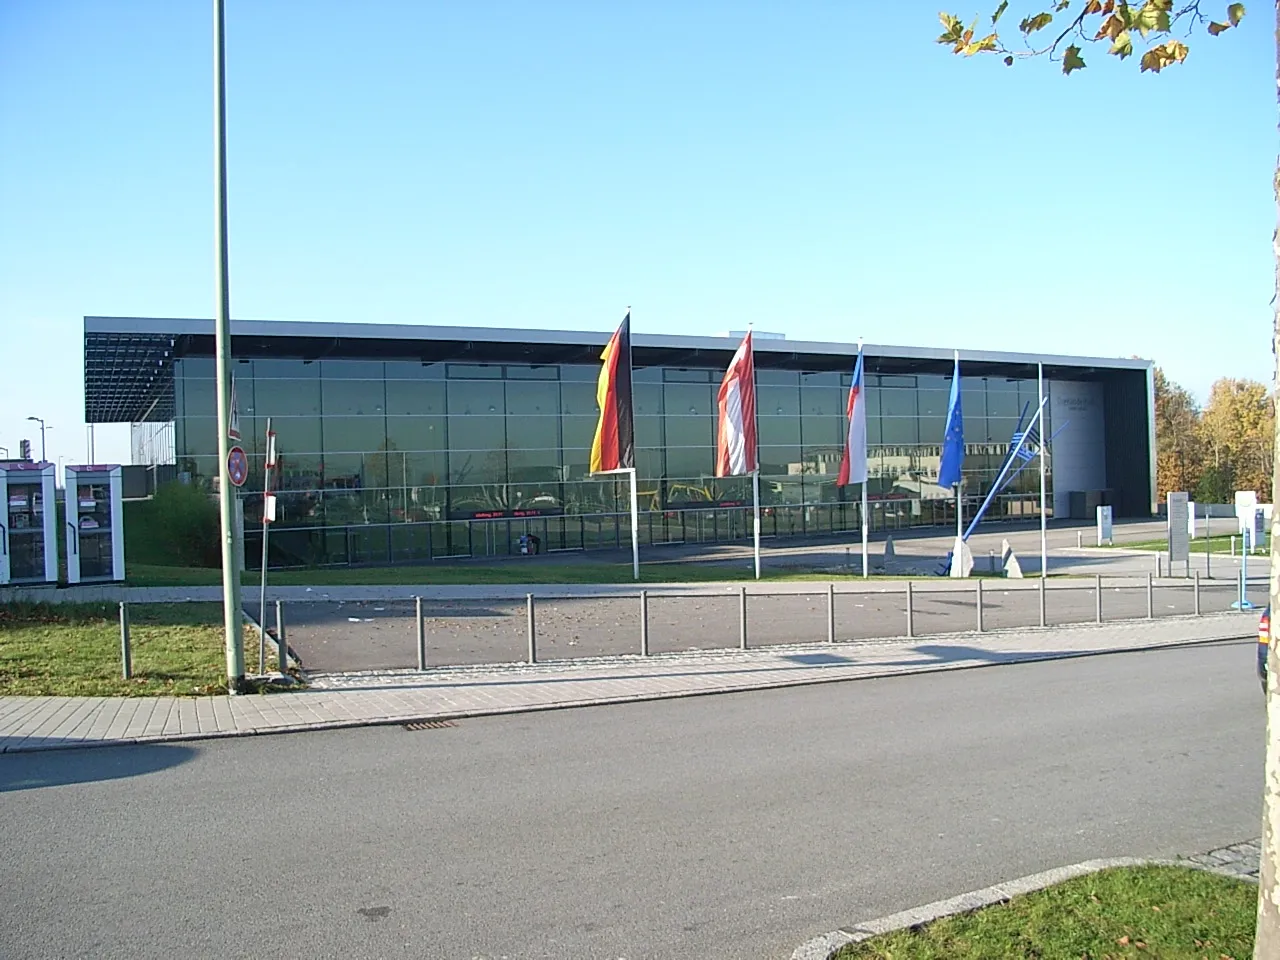 Photo showing: Beschreibung: Dreiländerhalle Passau

Quelle: Bild selbst erstellt
Datum: 7. November 2006
Autor: Konrad Lackerbeck